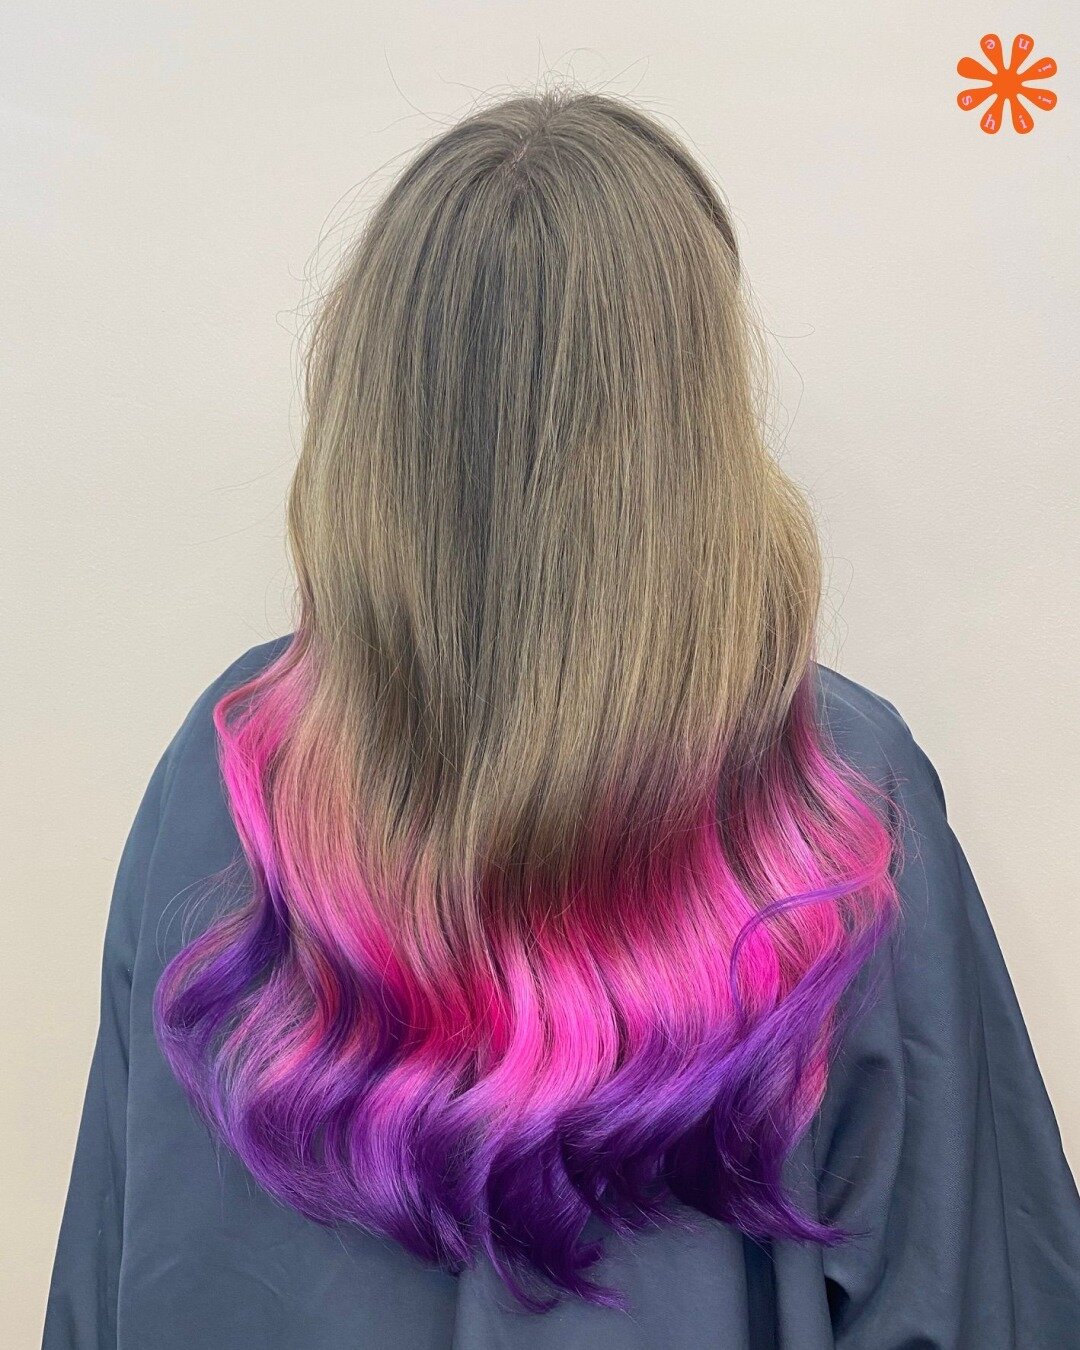 🌊 Color waves !
Un rainbow pink and purple sur un wavy parfait. 
Si tu veux tenter une fantaisie, fais nous confiance ! #couleurs  #cheveux #paris